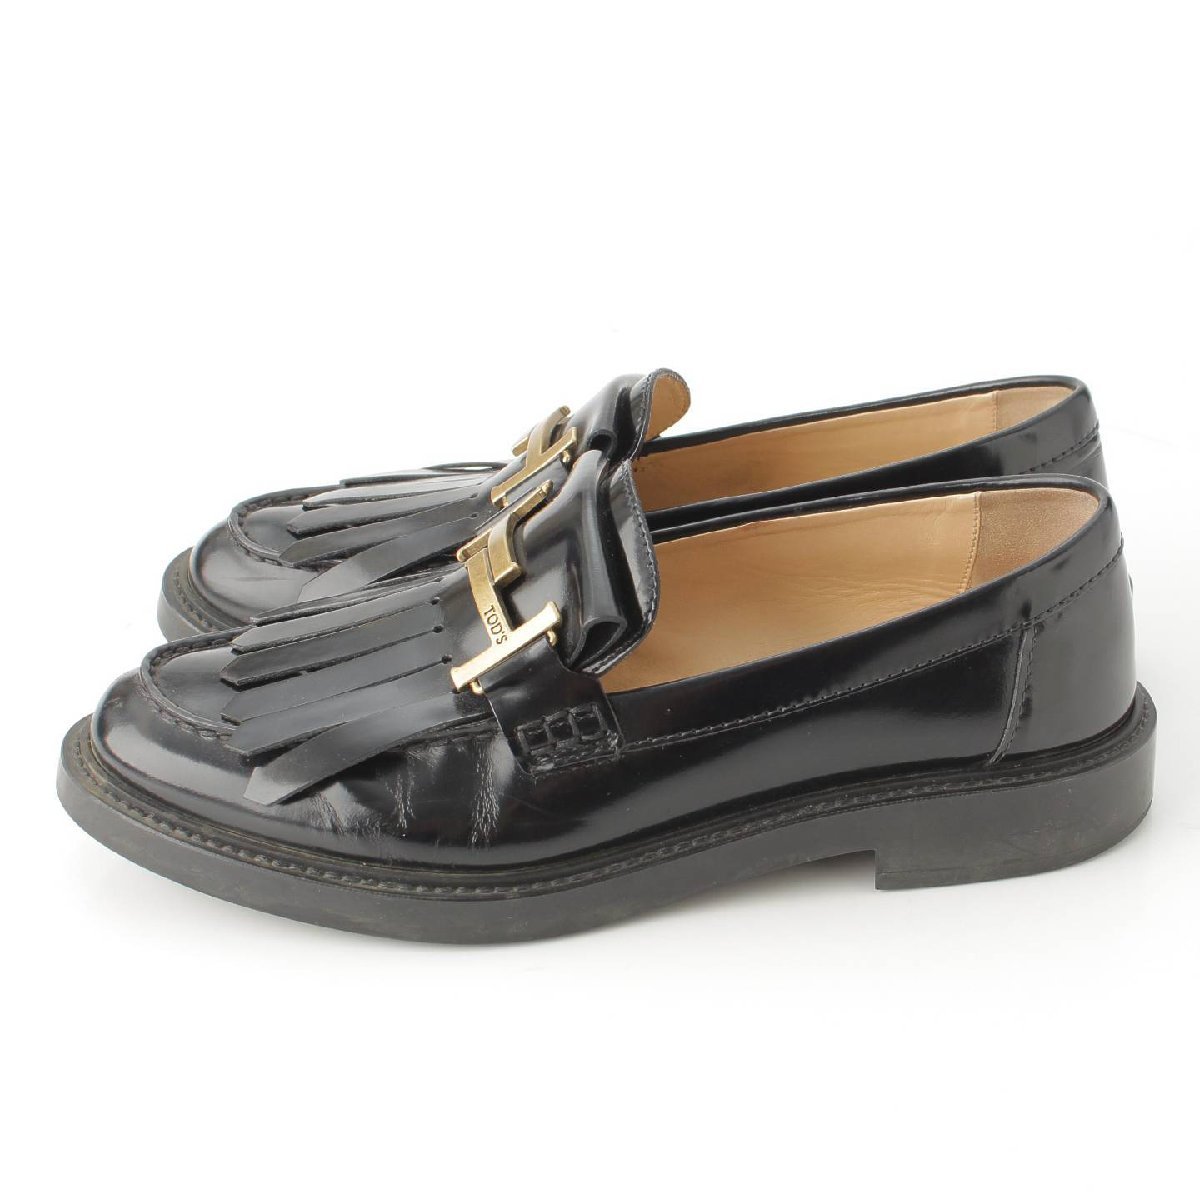 [ Tod's ]Tods двойной T кожа кисточка Loafer обувь черный 39 [ б/у ][ стандартный товар гарантия ]190395